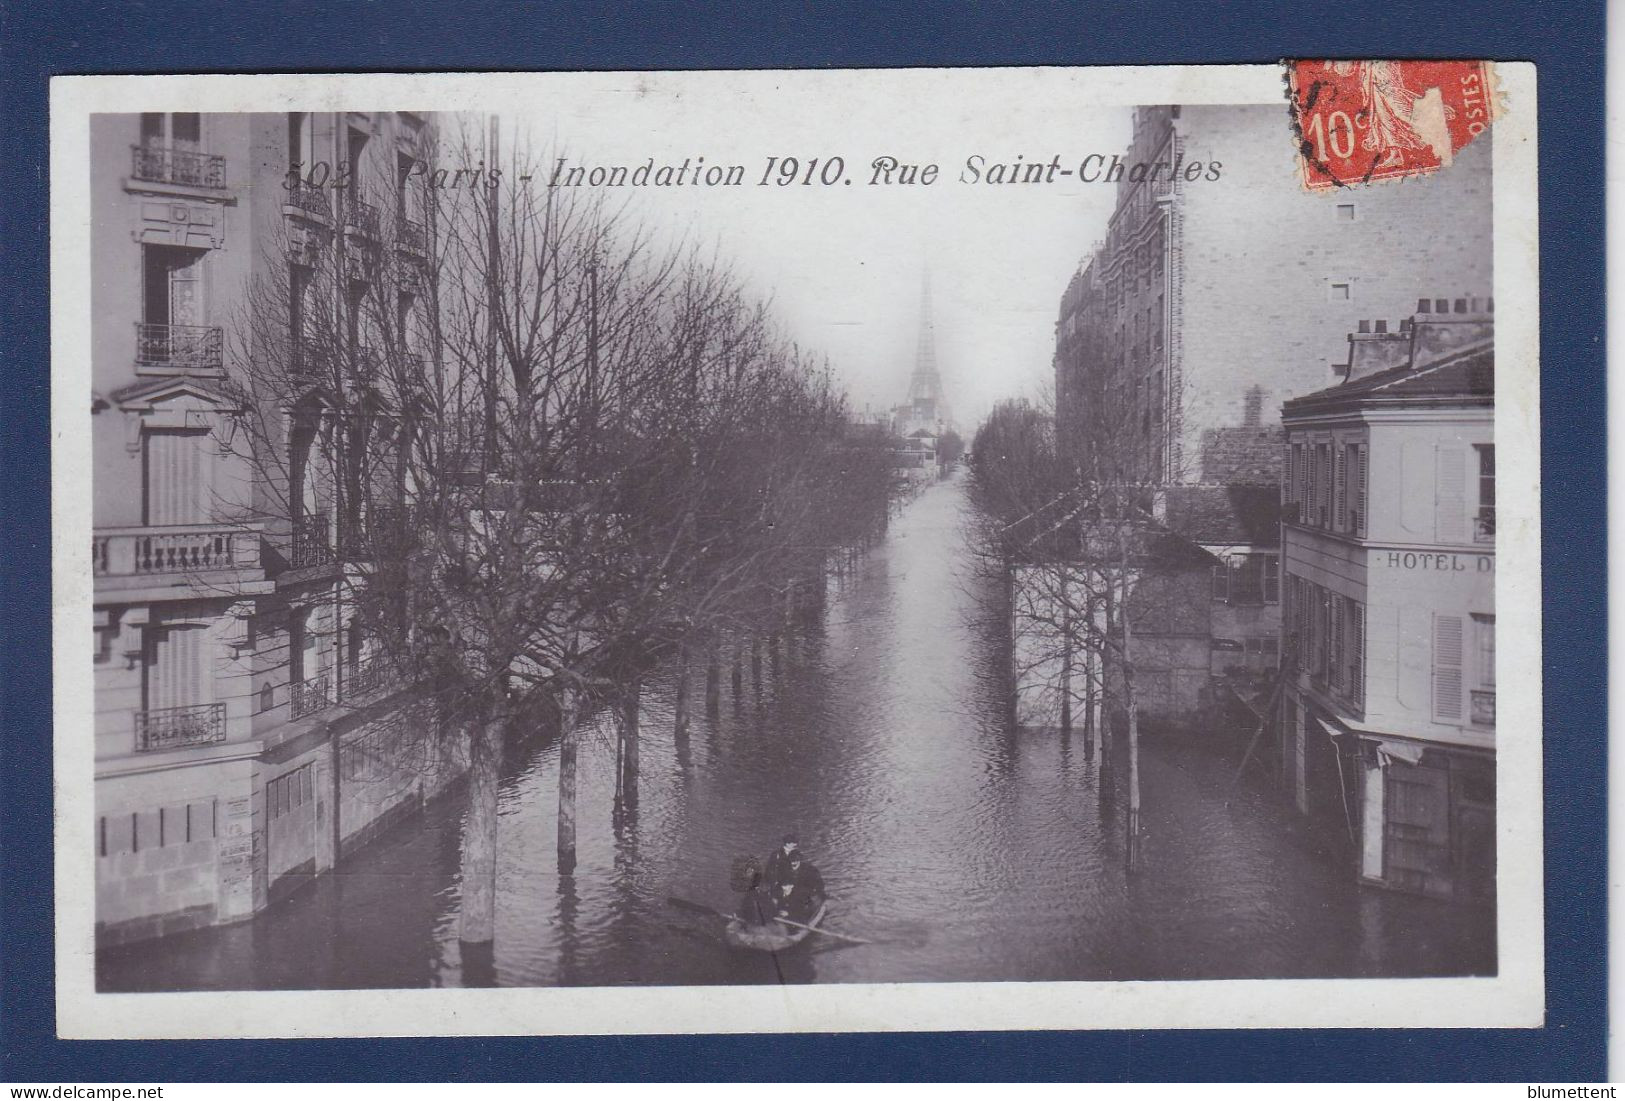 CPA 1 Euro [75] Paris > Inondations De 1910 Prix De Départ 1 Euro Timbrée Non Circulée - Paris Flood, 1910